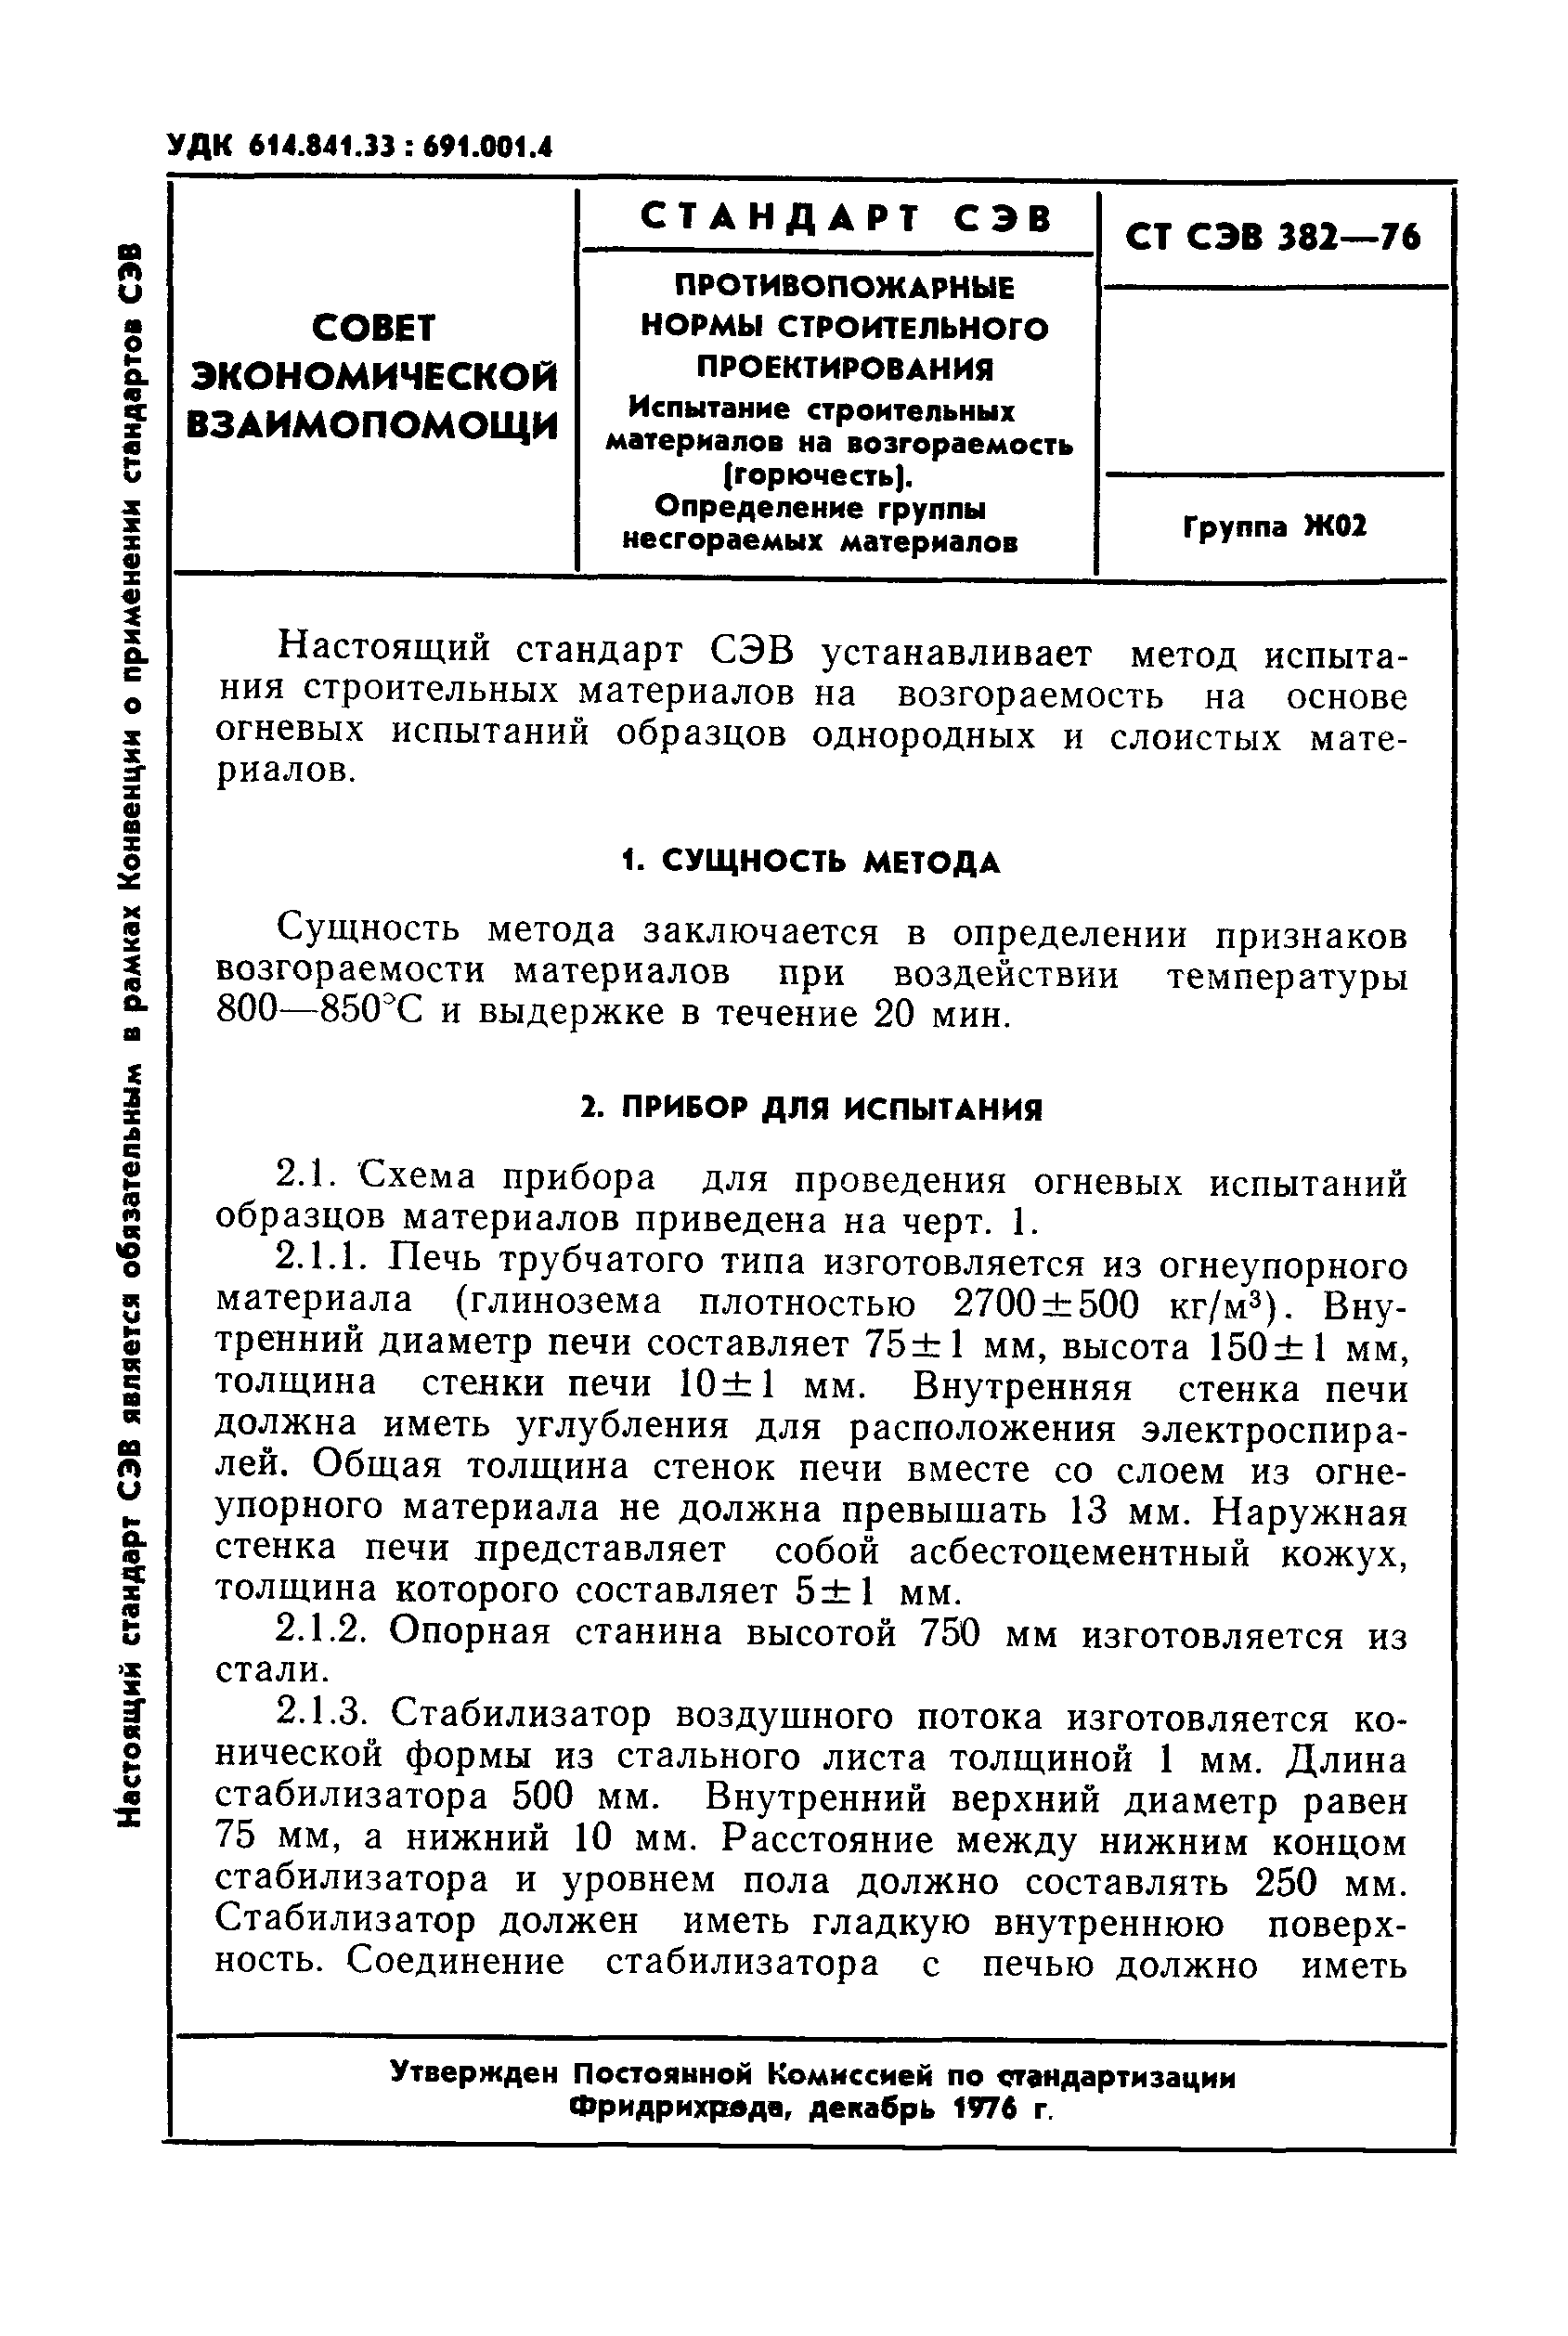 СТ СЭВ 382-76